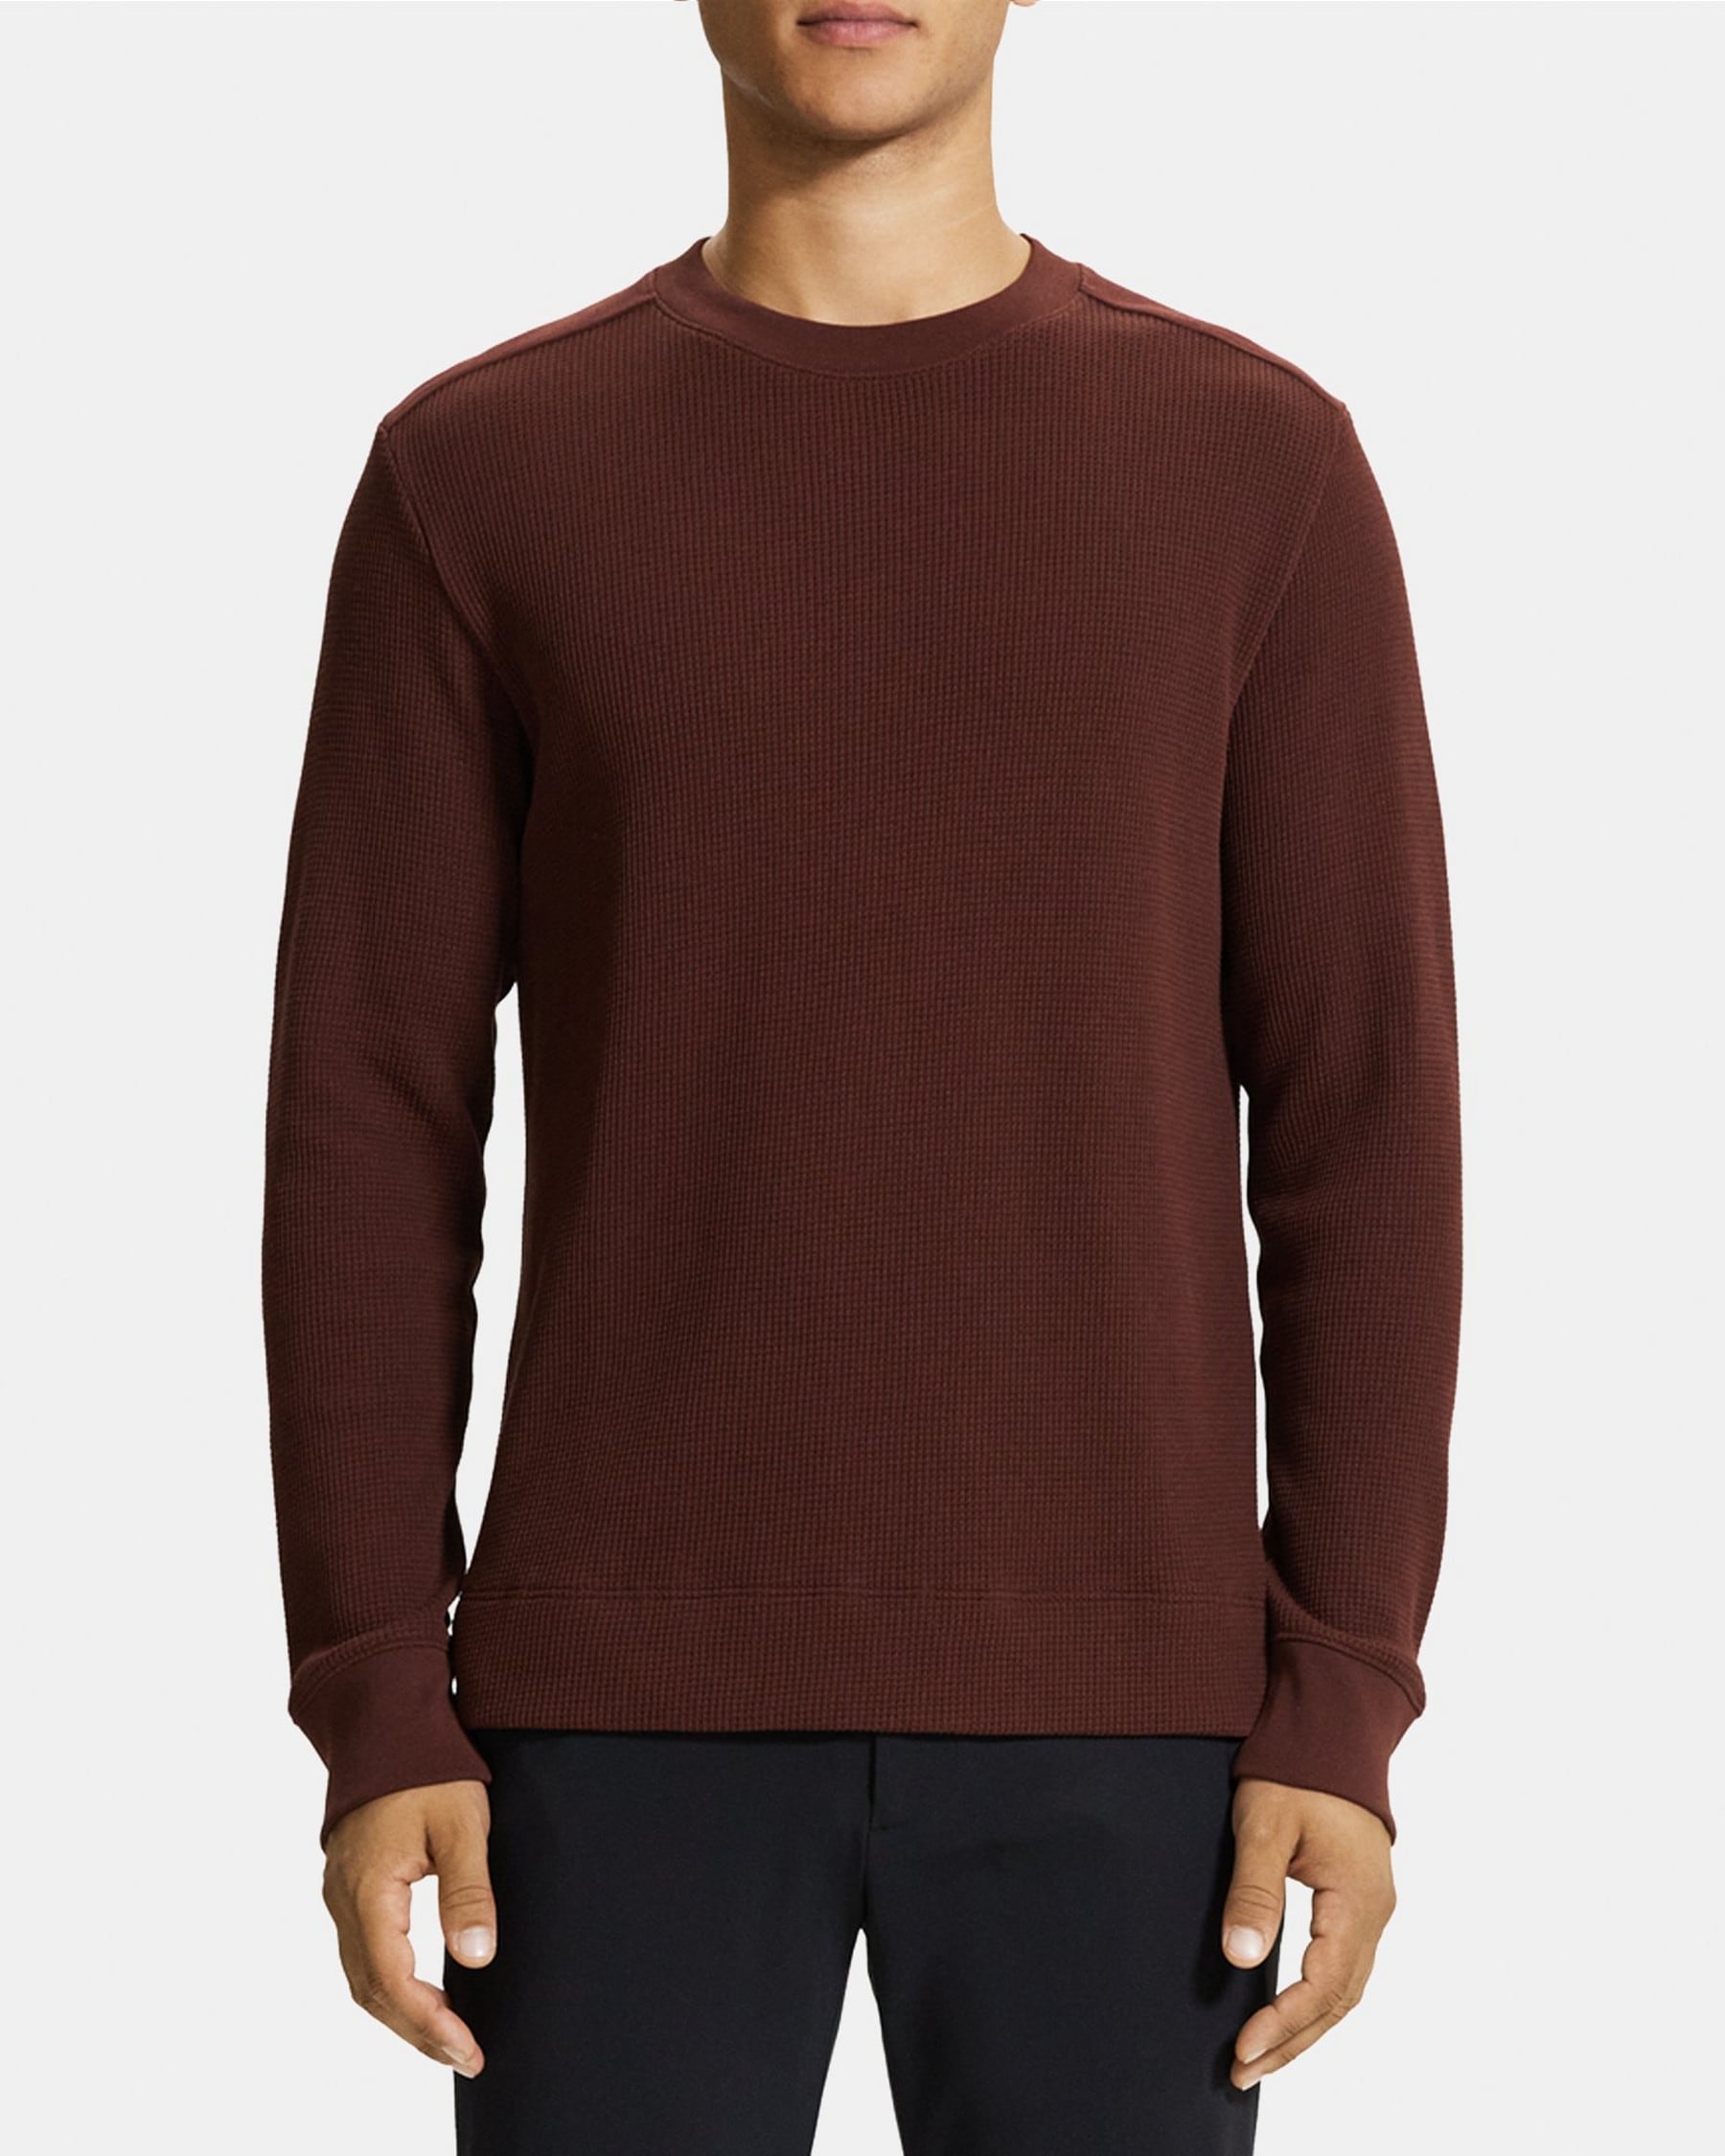 띠어리 Theory Crewneck Sweater in Cotton Waffle Knit,CHOCOLATE